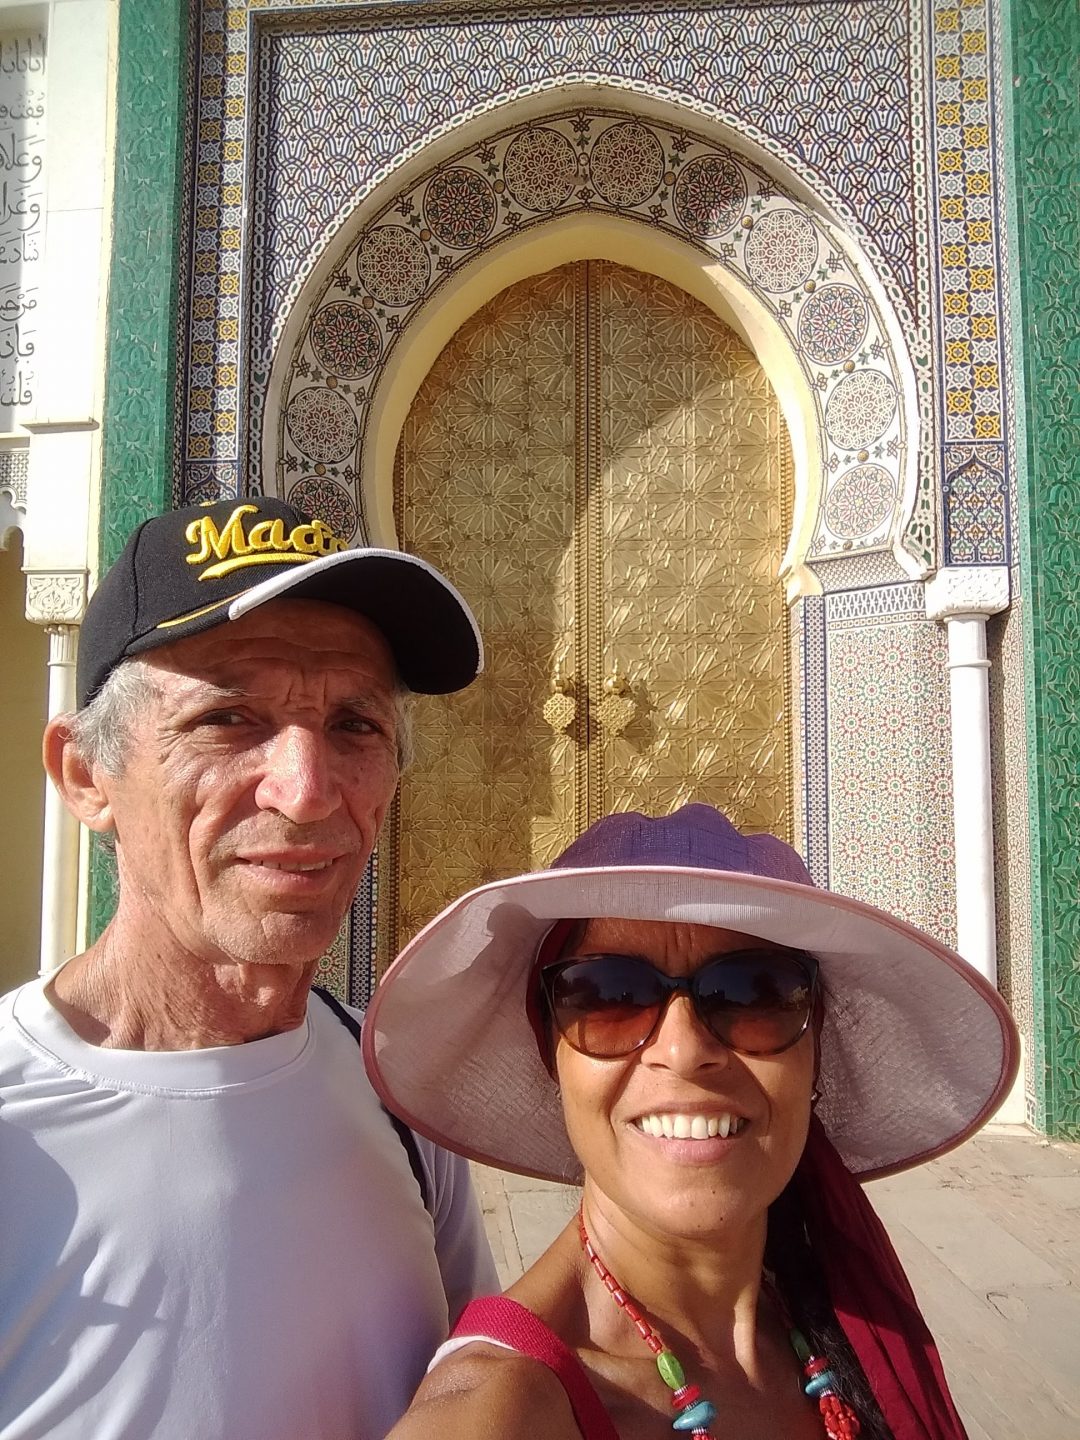 Asc Portas de bronze do Palácio Real em Fez